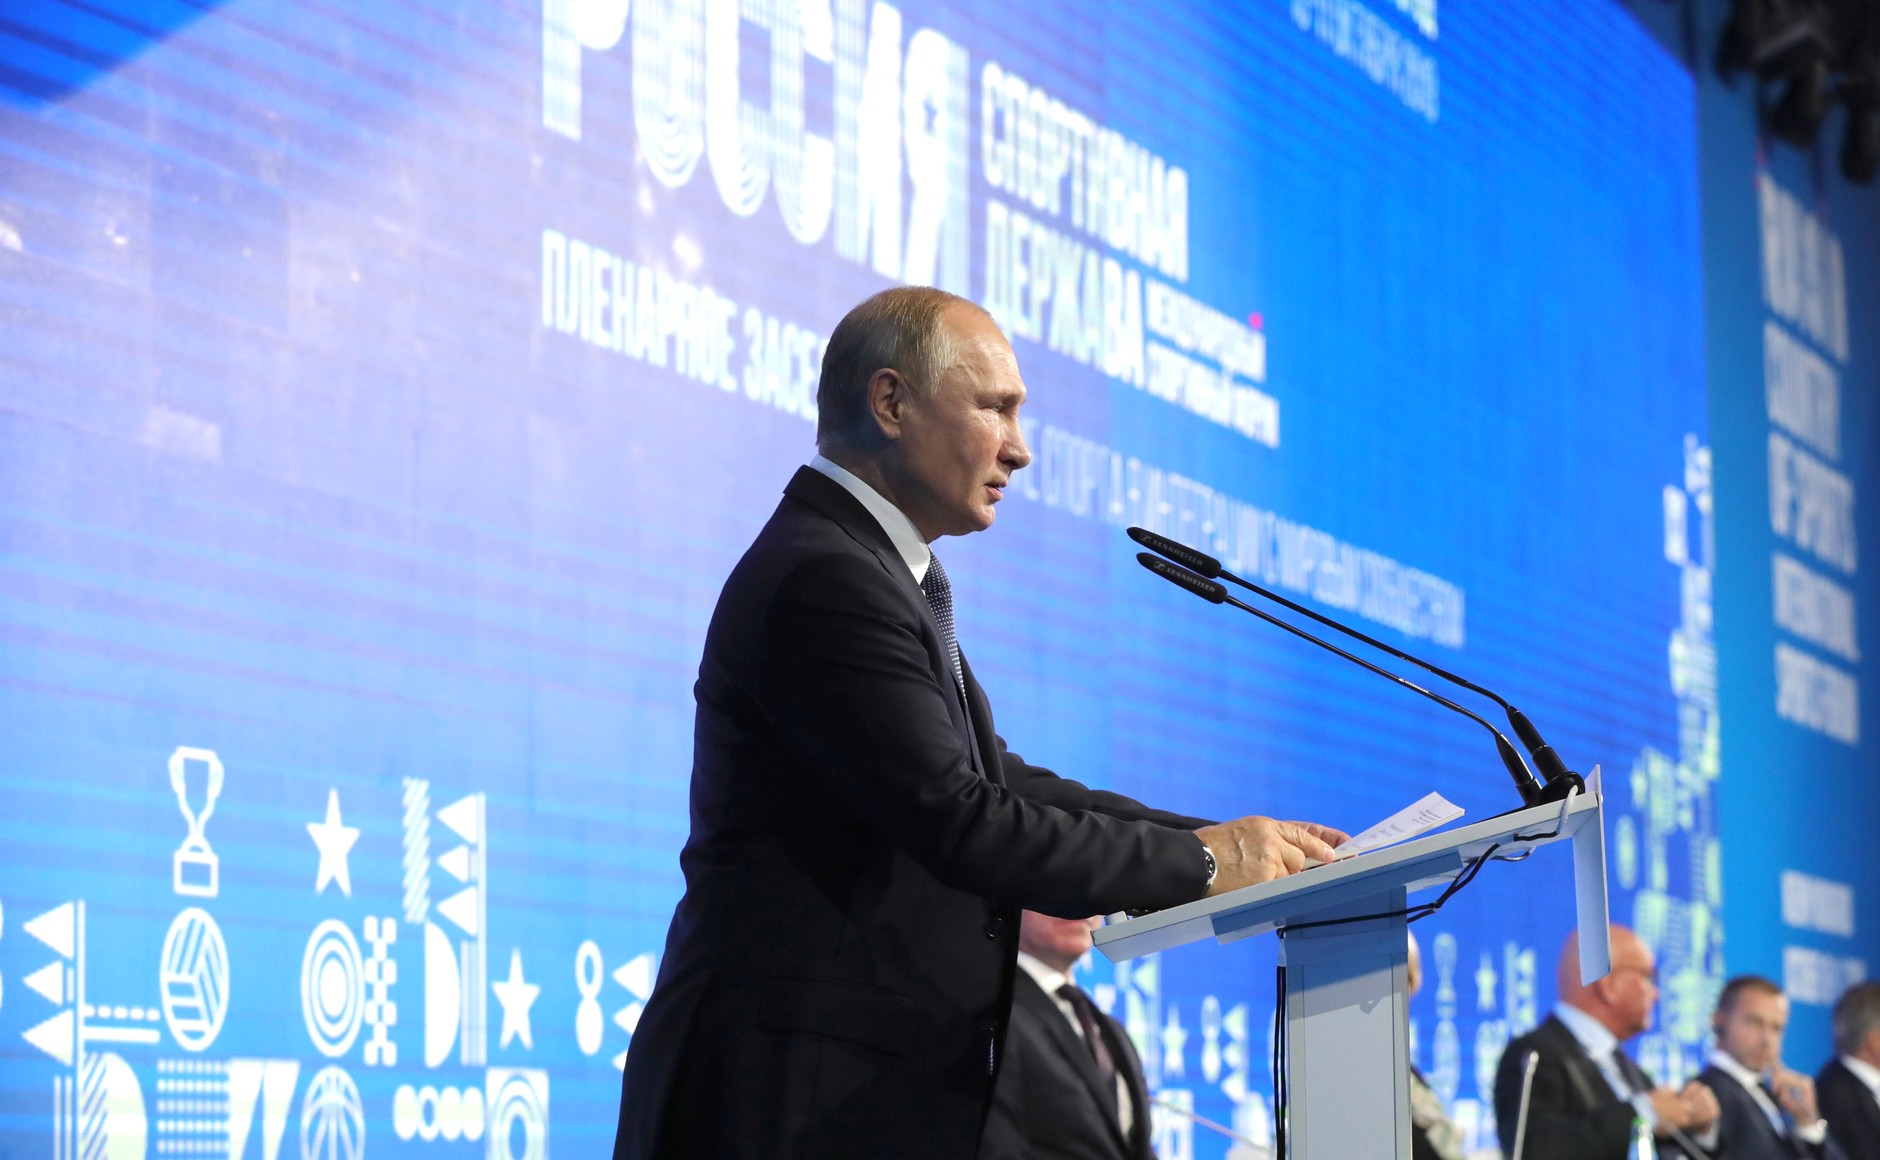 Владимир Путин предложил создавать физкультурно-спортивные клубы на предприятиях